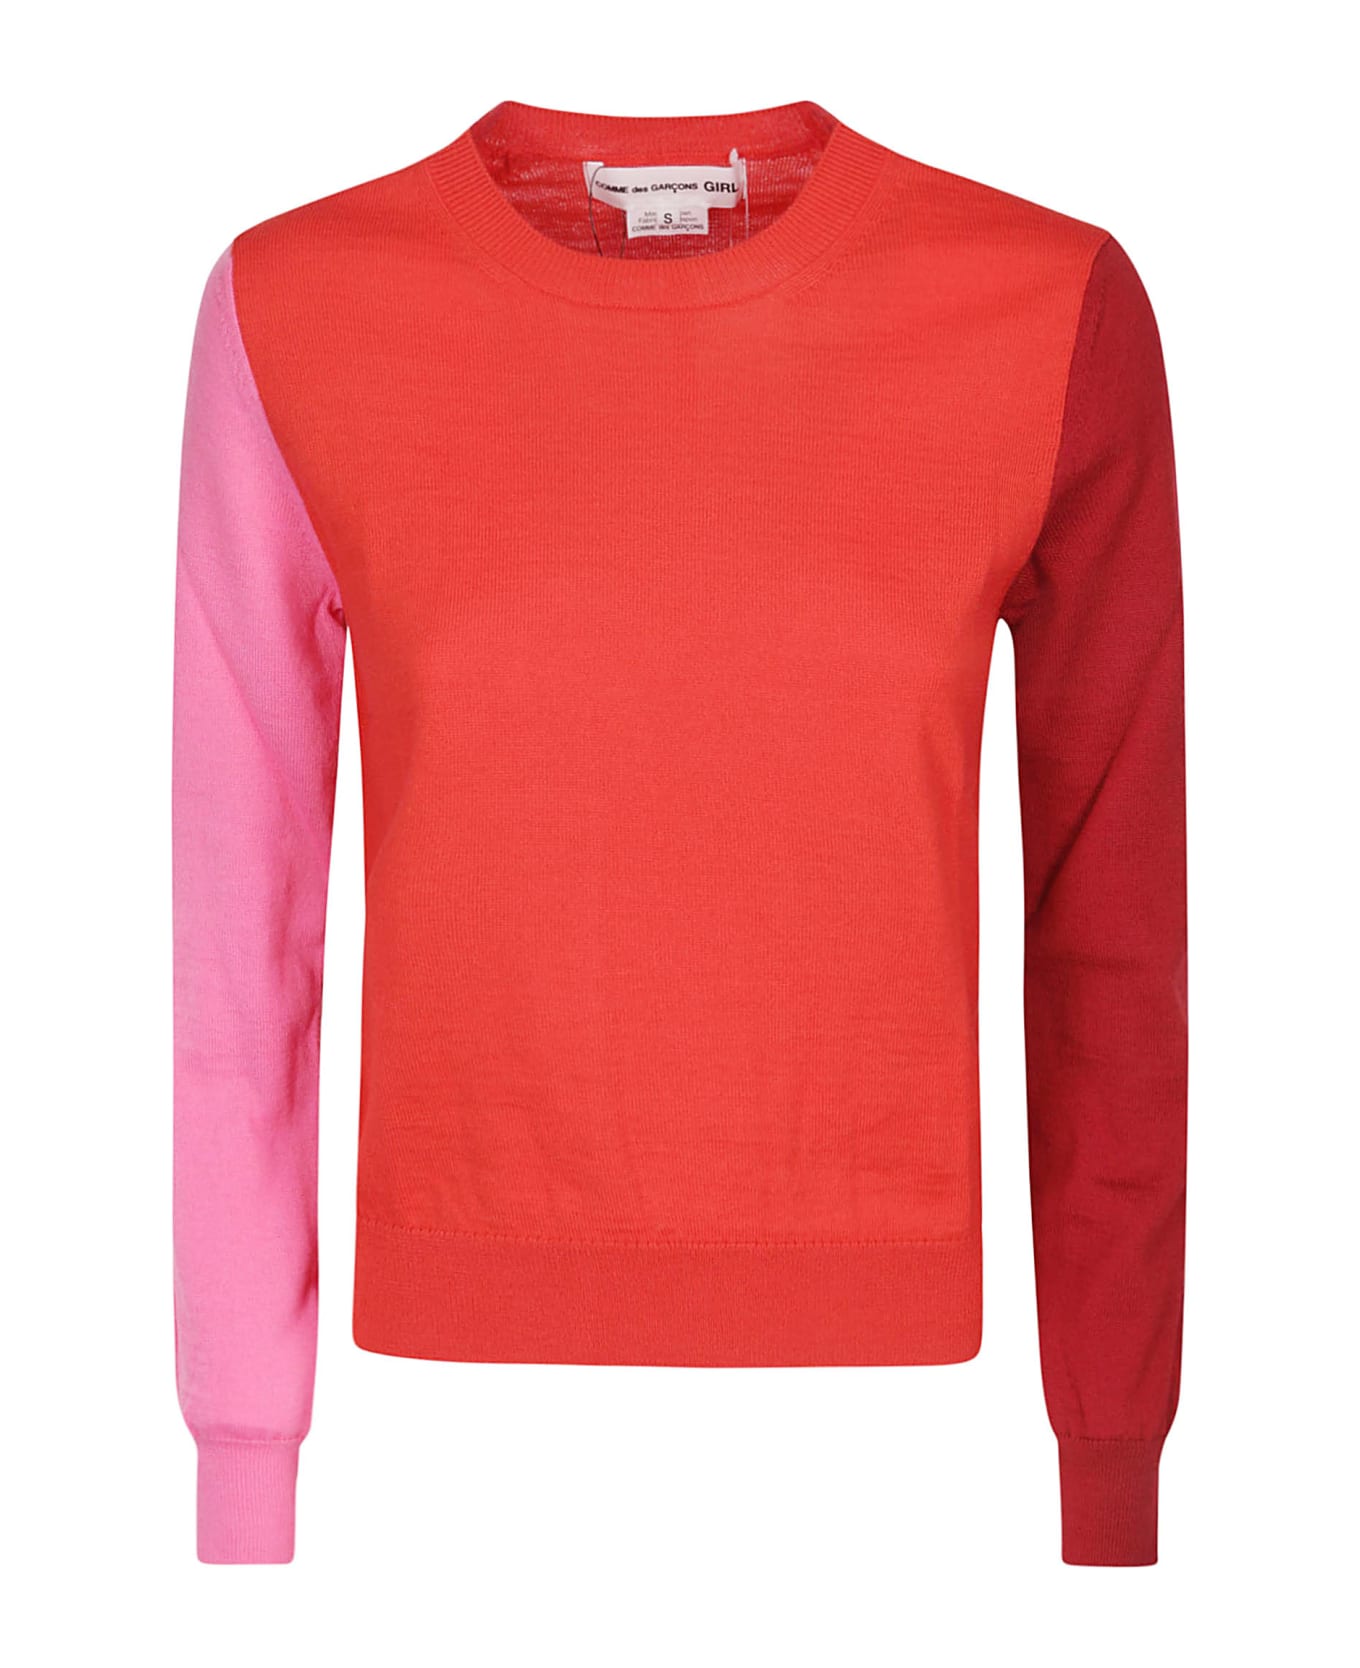 Teedra mini shirt dress Ladies' Sweater - RED MIX